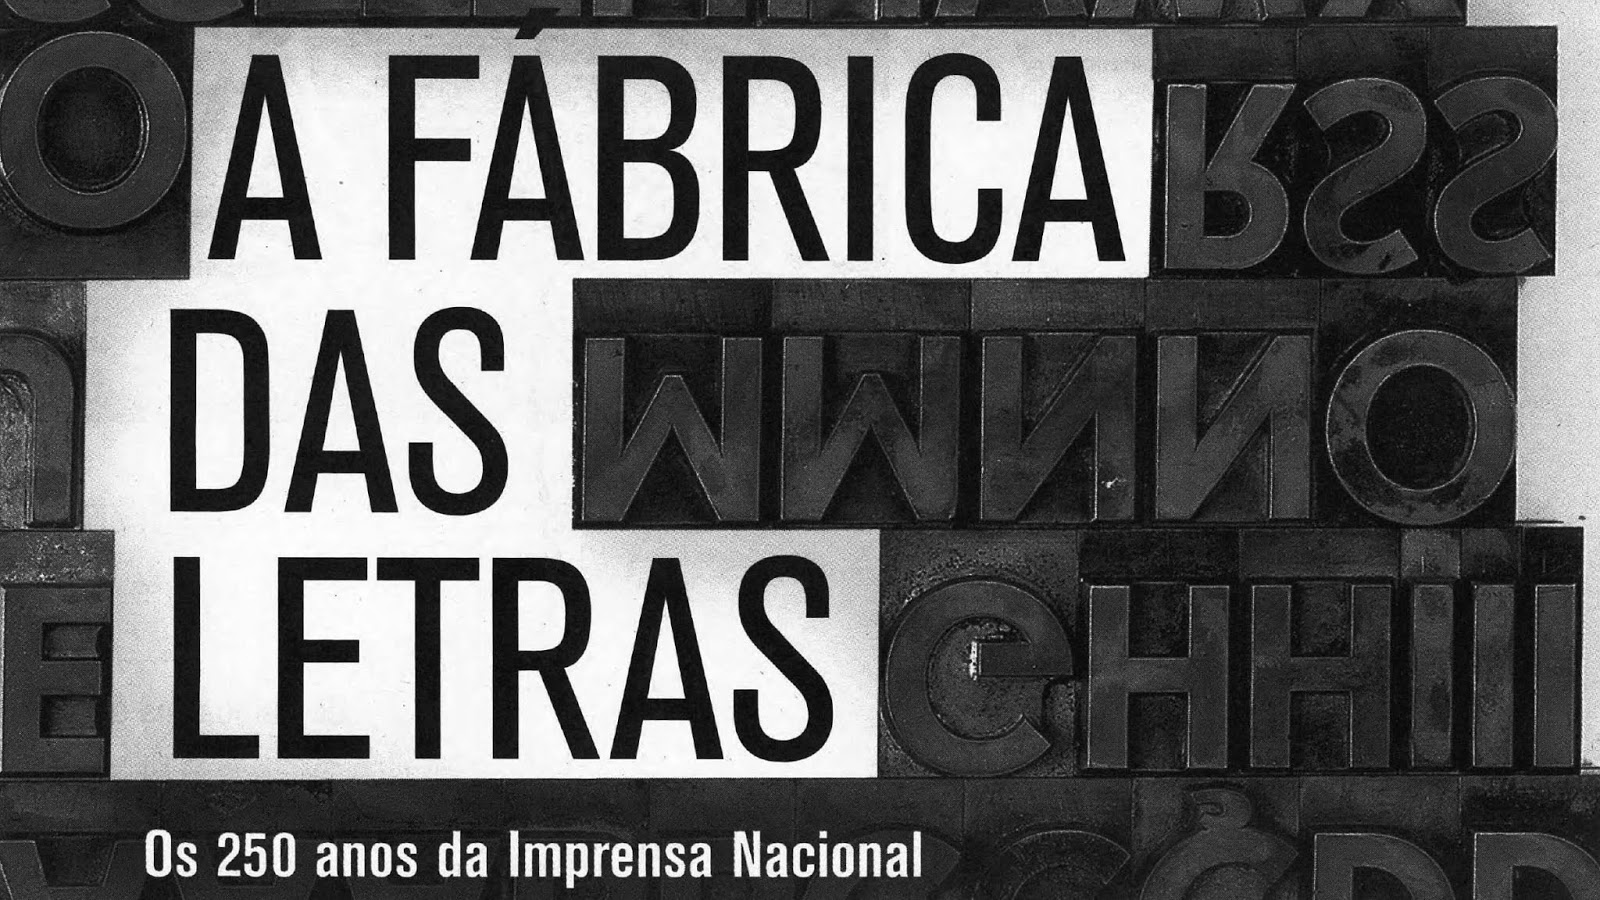 «A Fábrica das Letras» – Os 250 anos da Imprensa Nacional contados no Jornal de Negócios